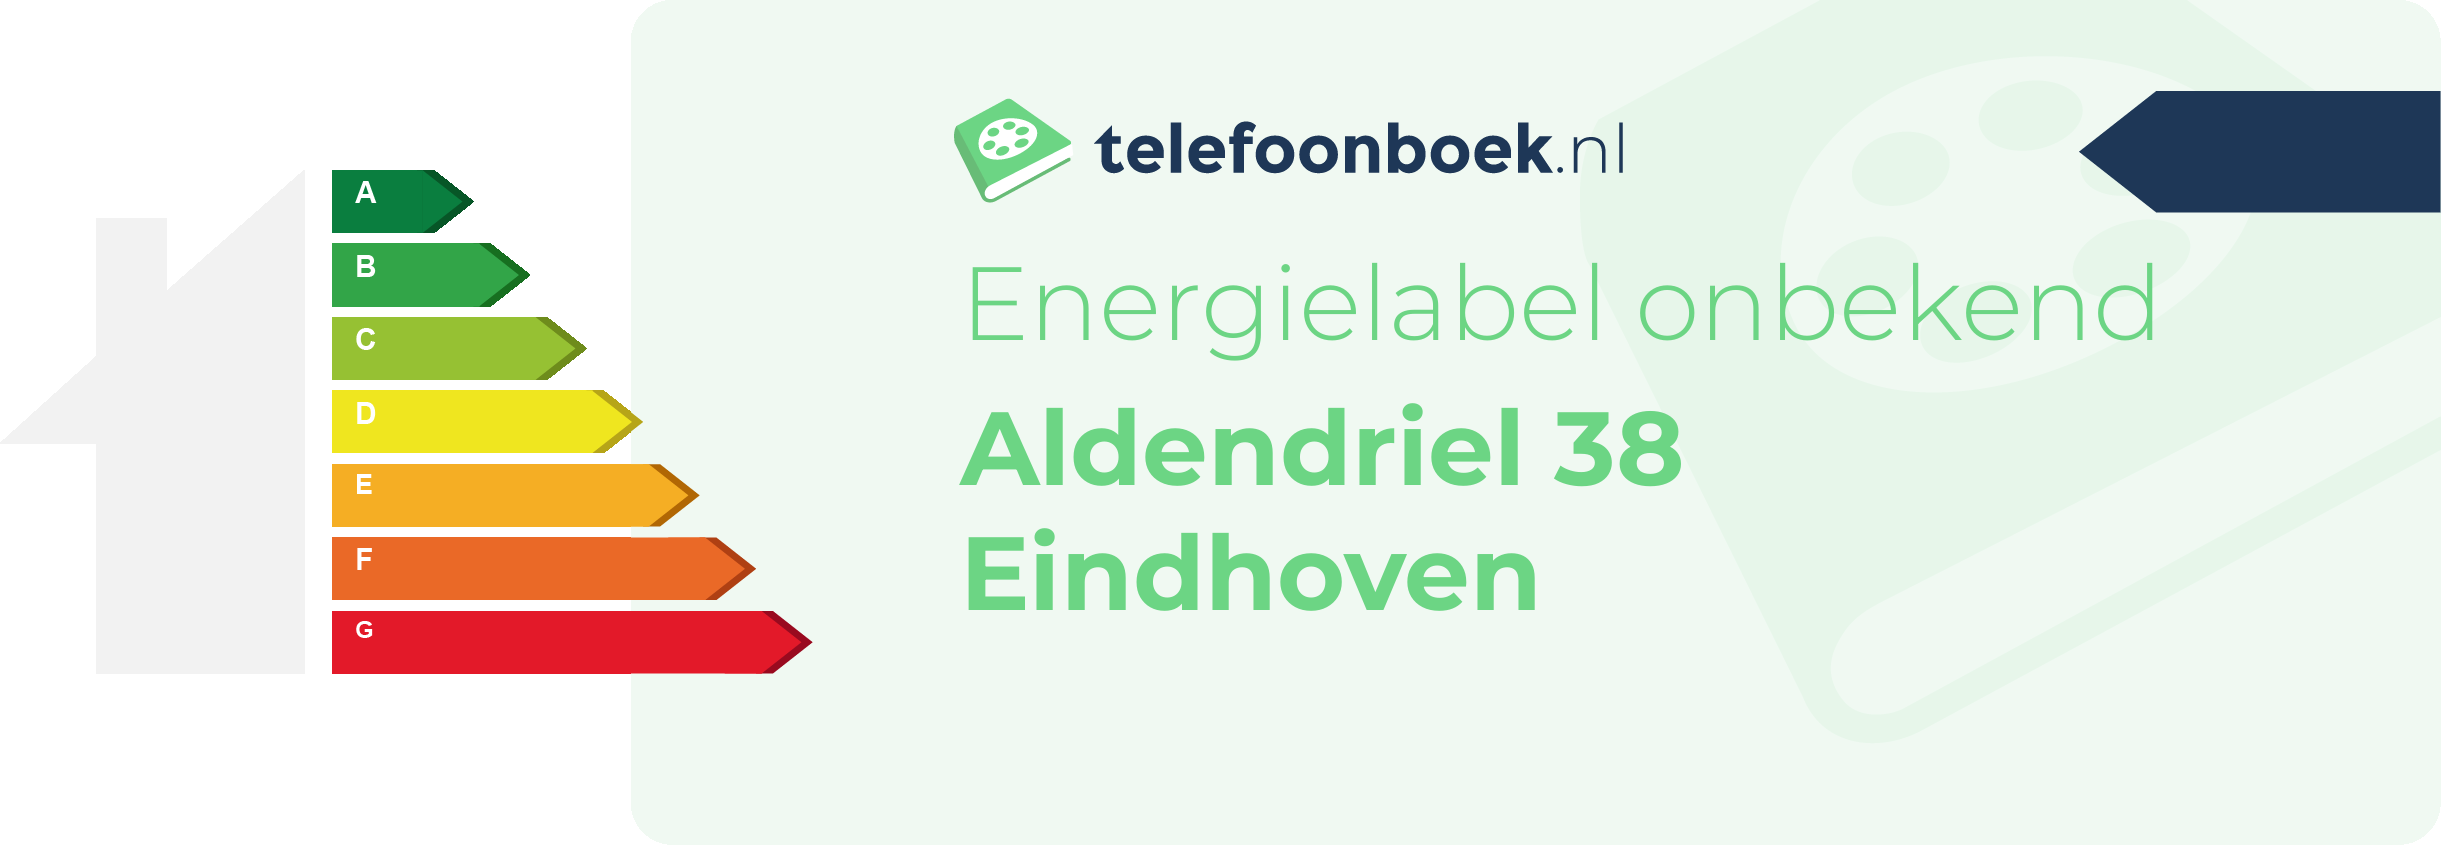 Energielabel Aldendriel 38 Eindhoven